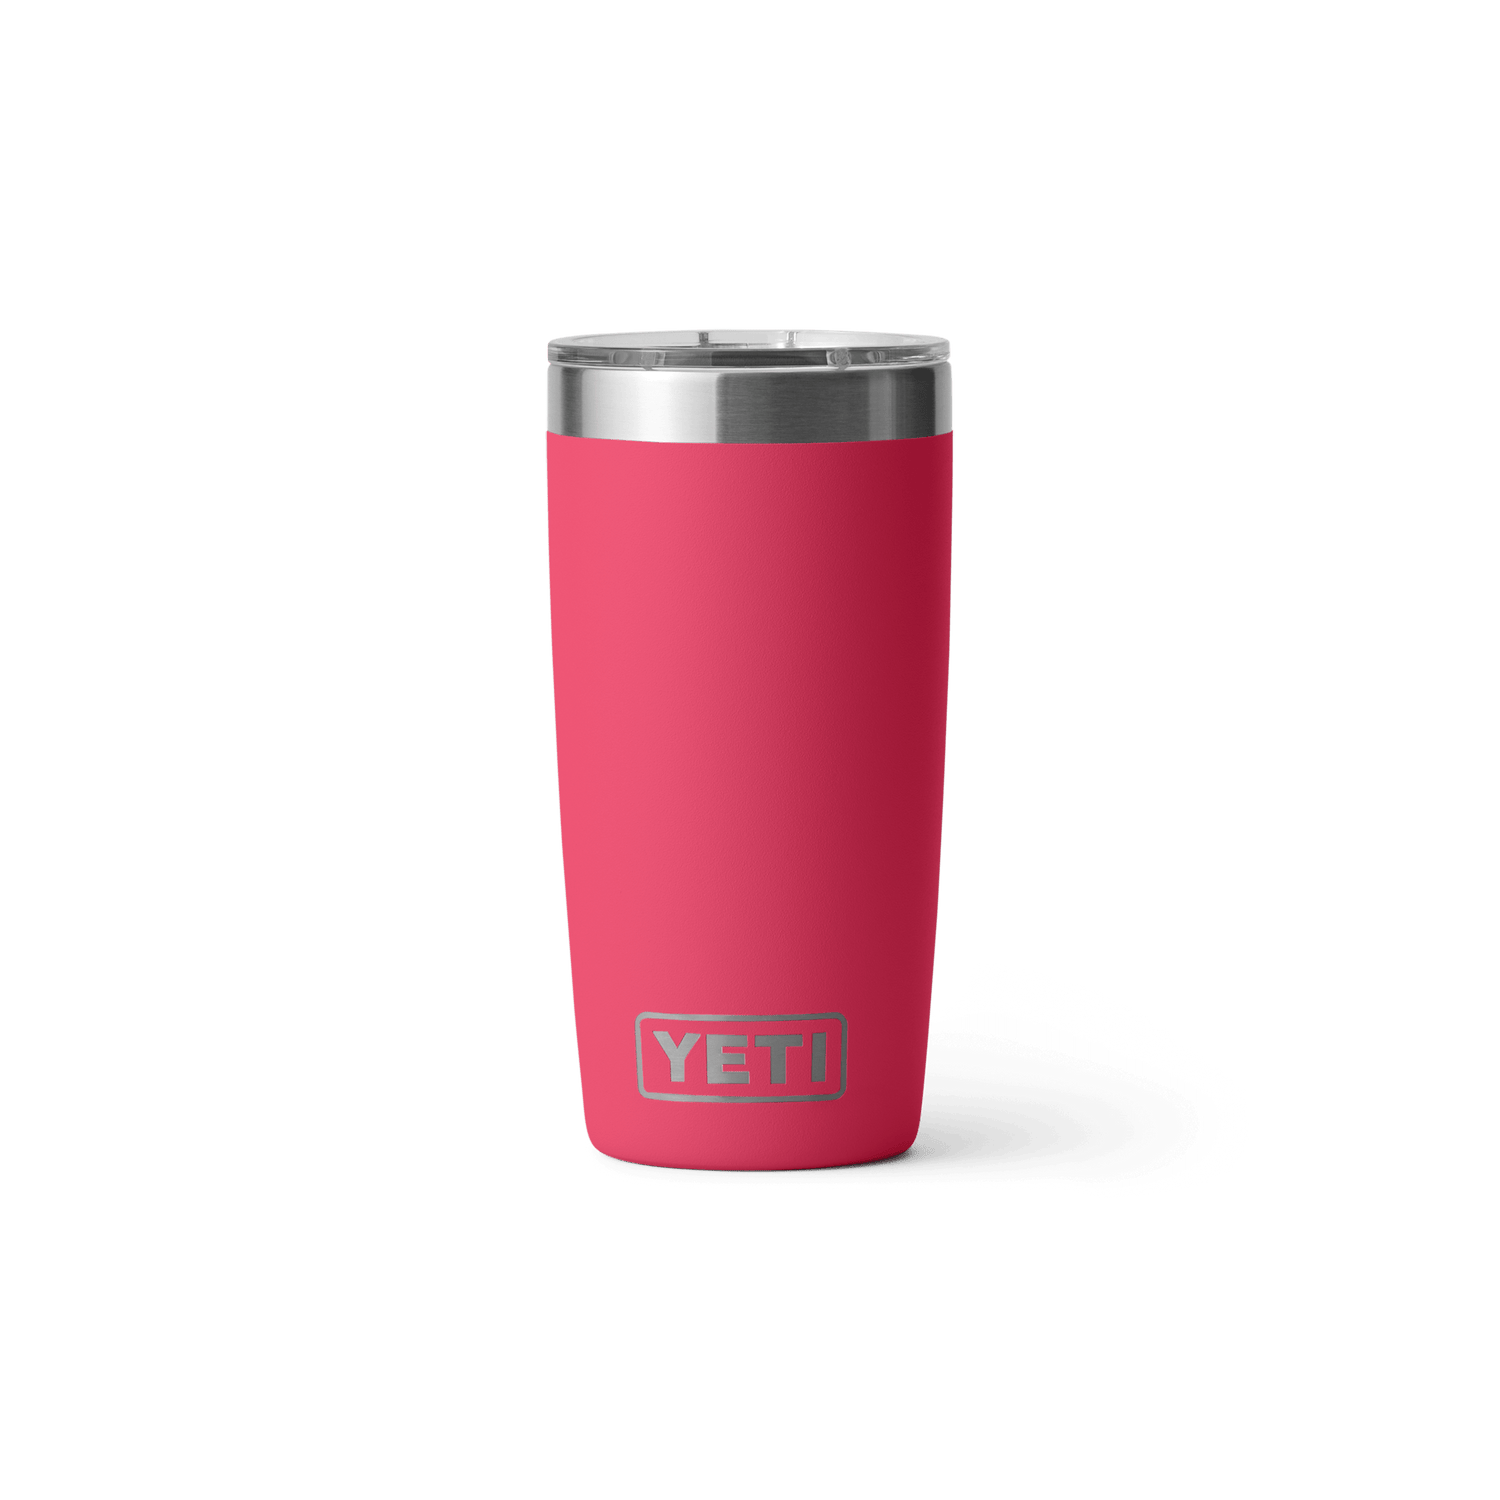 Yeti Rambler - 20oz Travel Mug - Bimini Pink